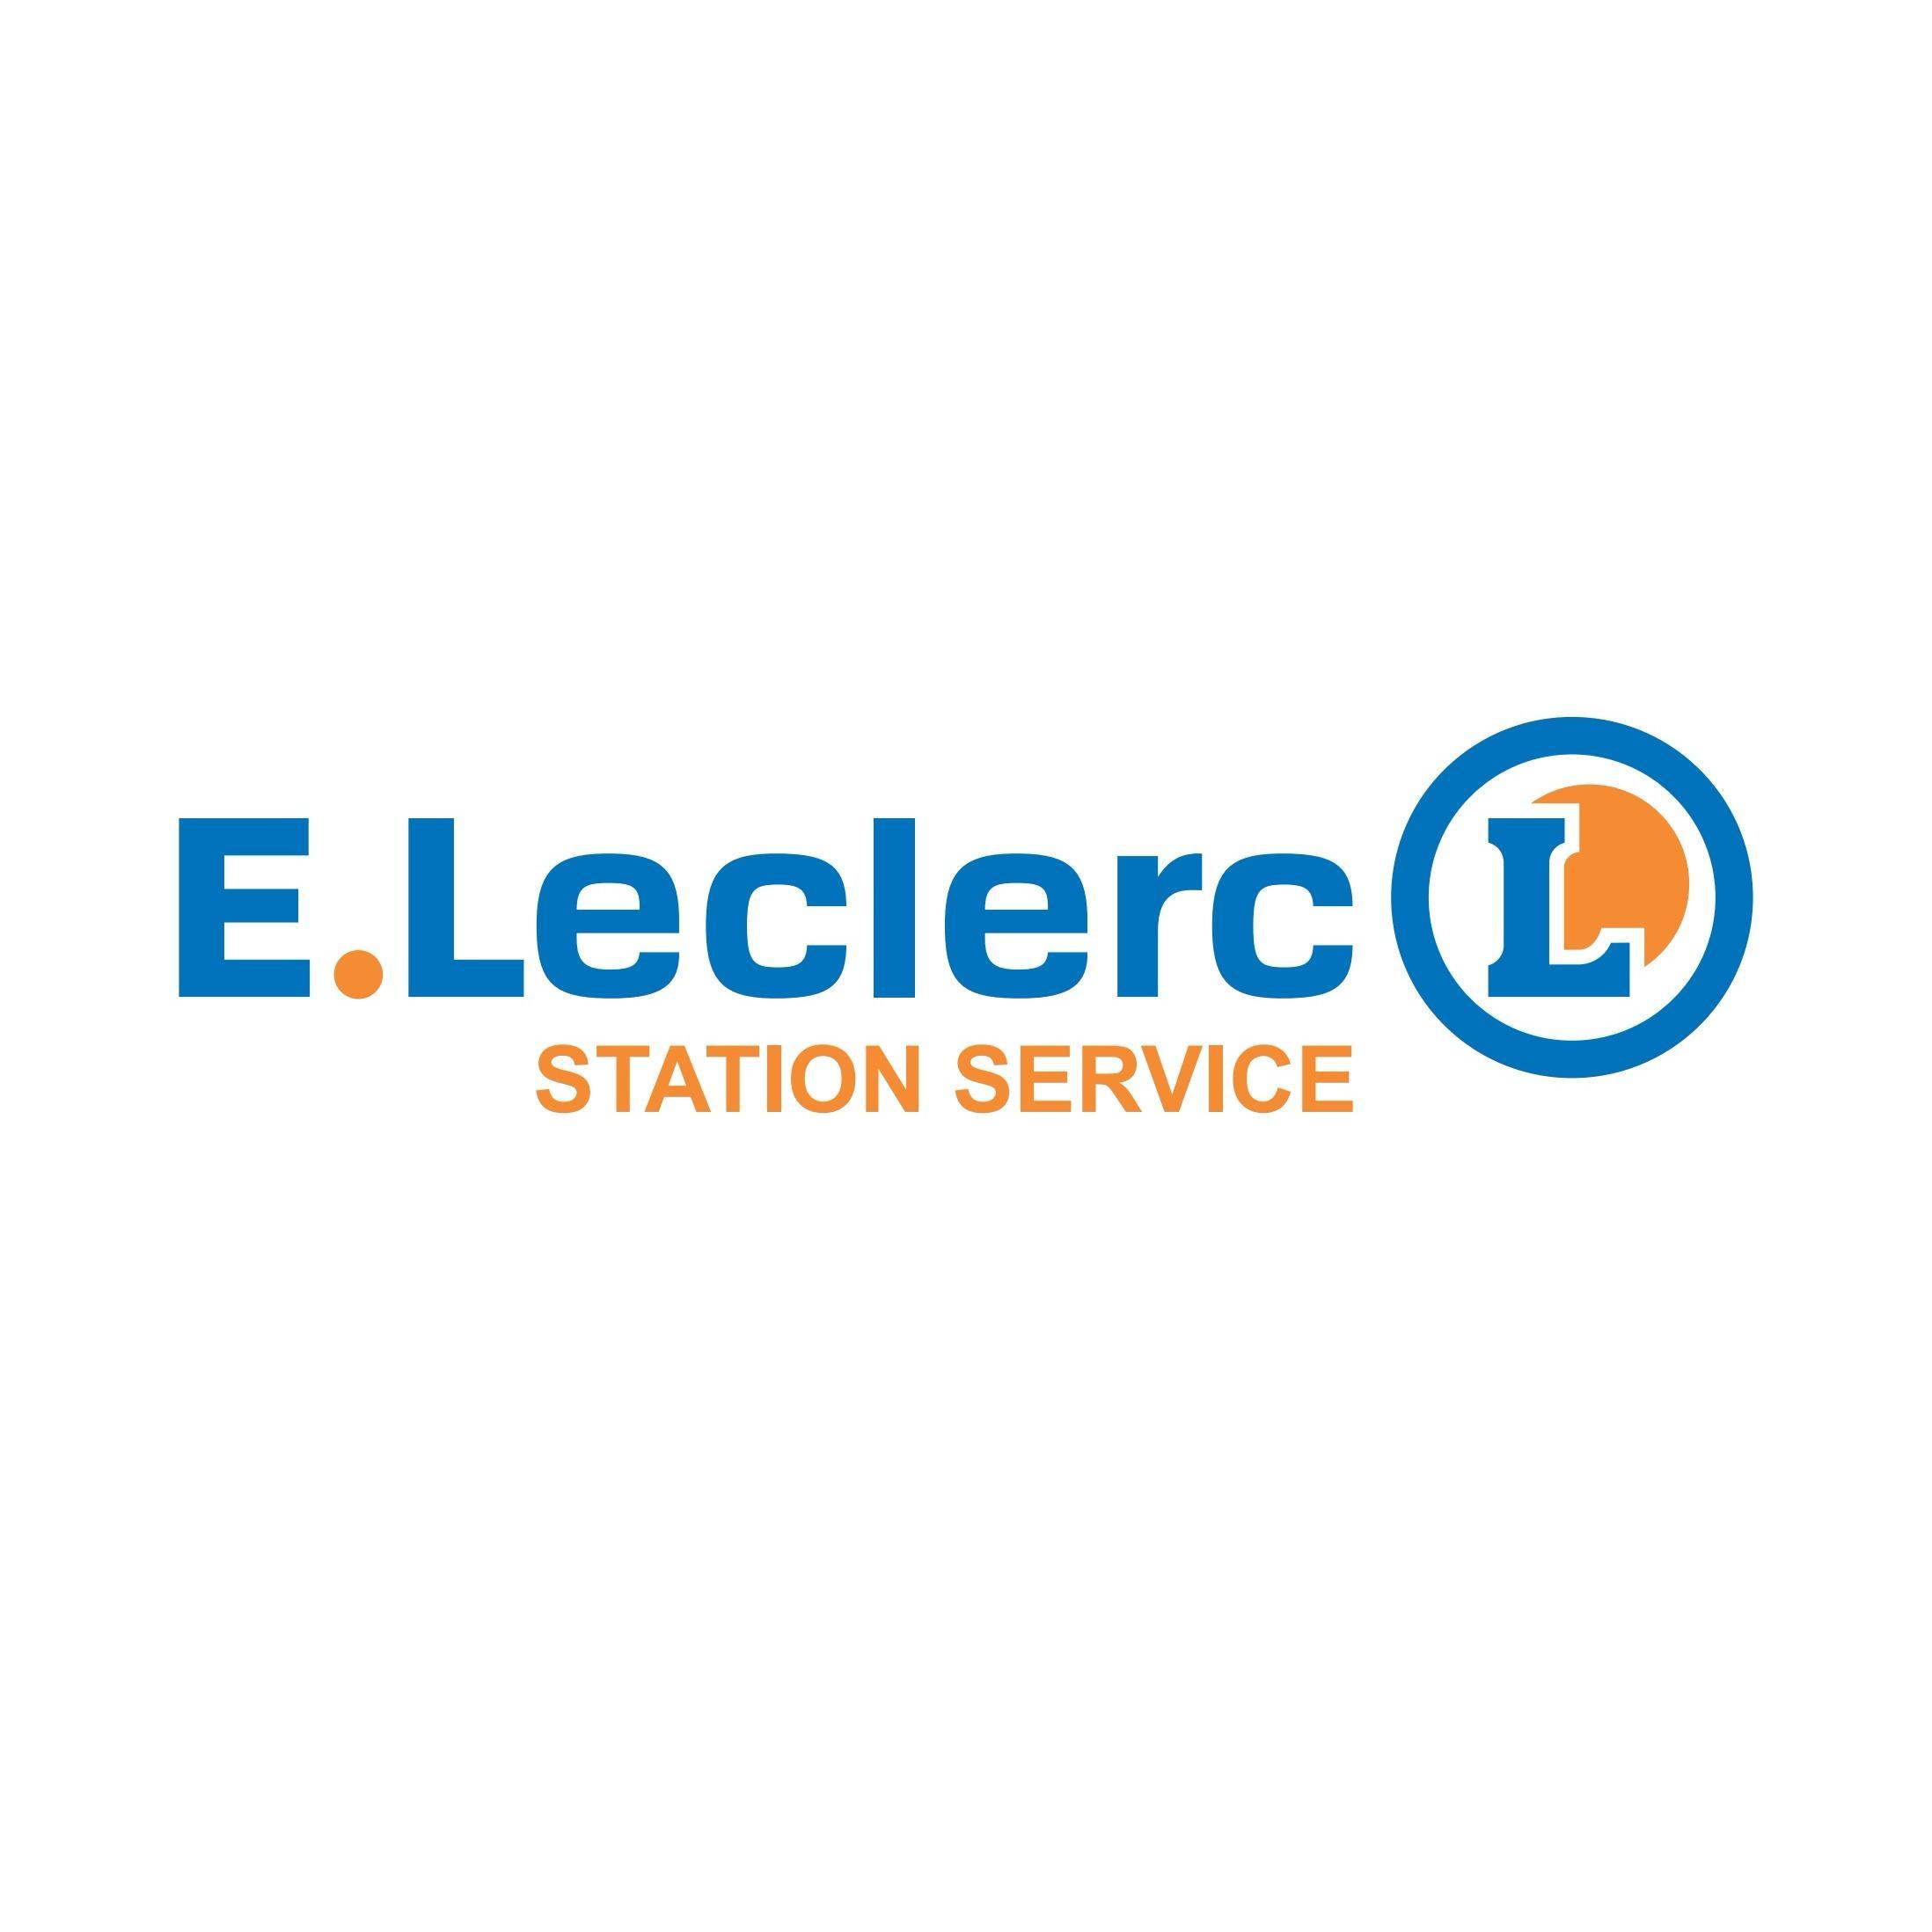 E.leclerc Station Service Marmoutier